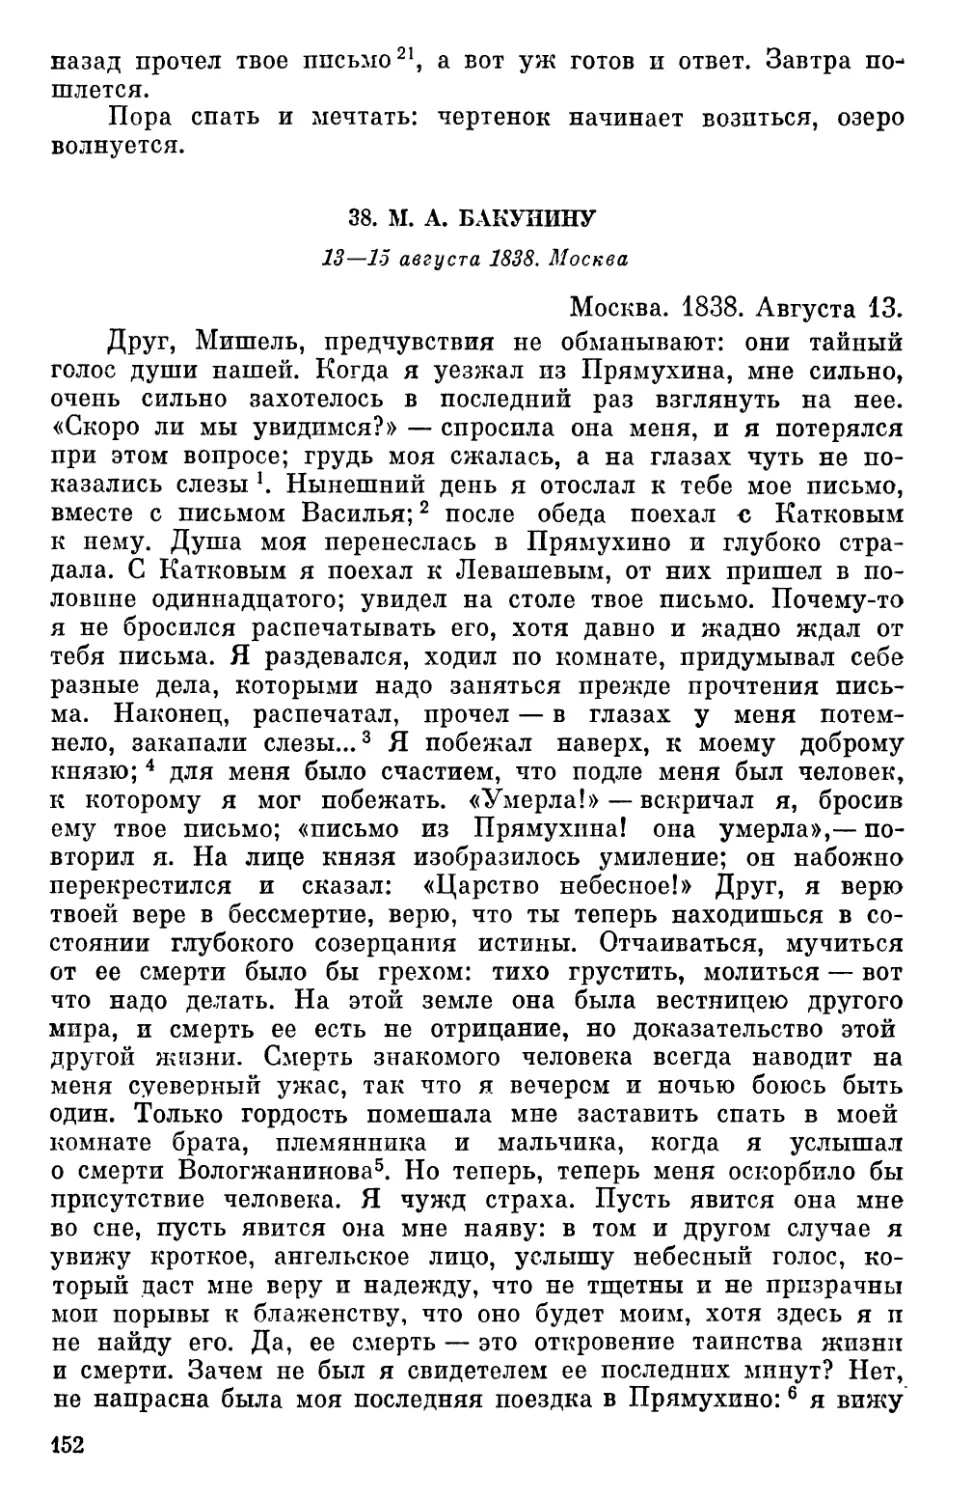 38. М. А. Бакунину. 13—15 августа 1838